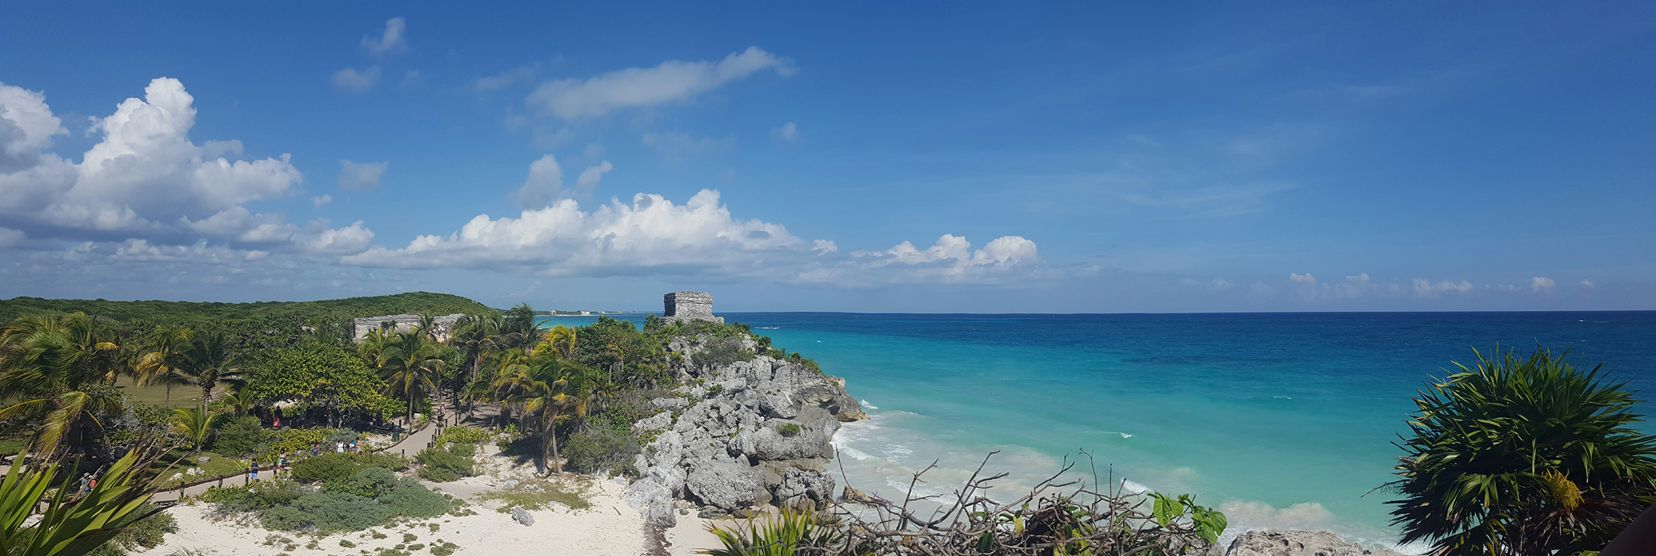 Las mejores playas del caribe mexicano